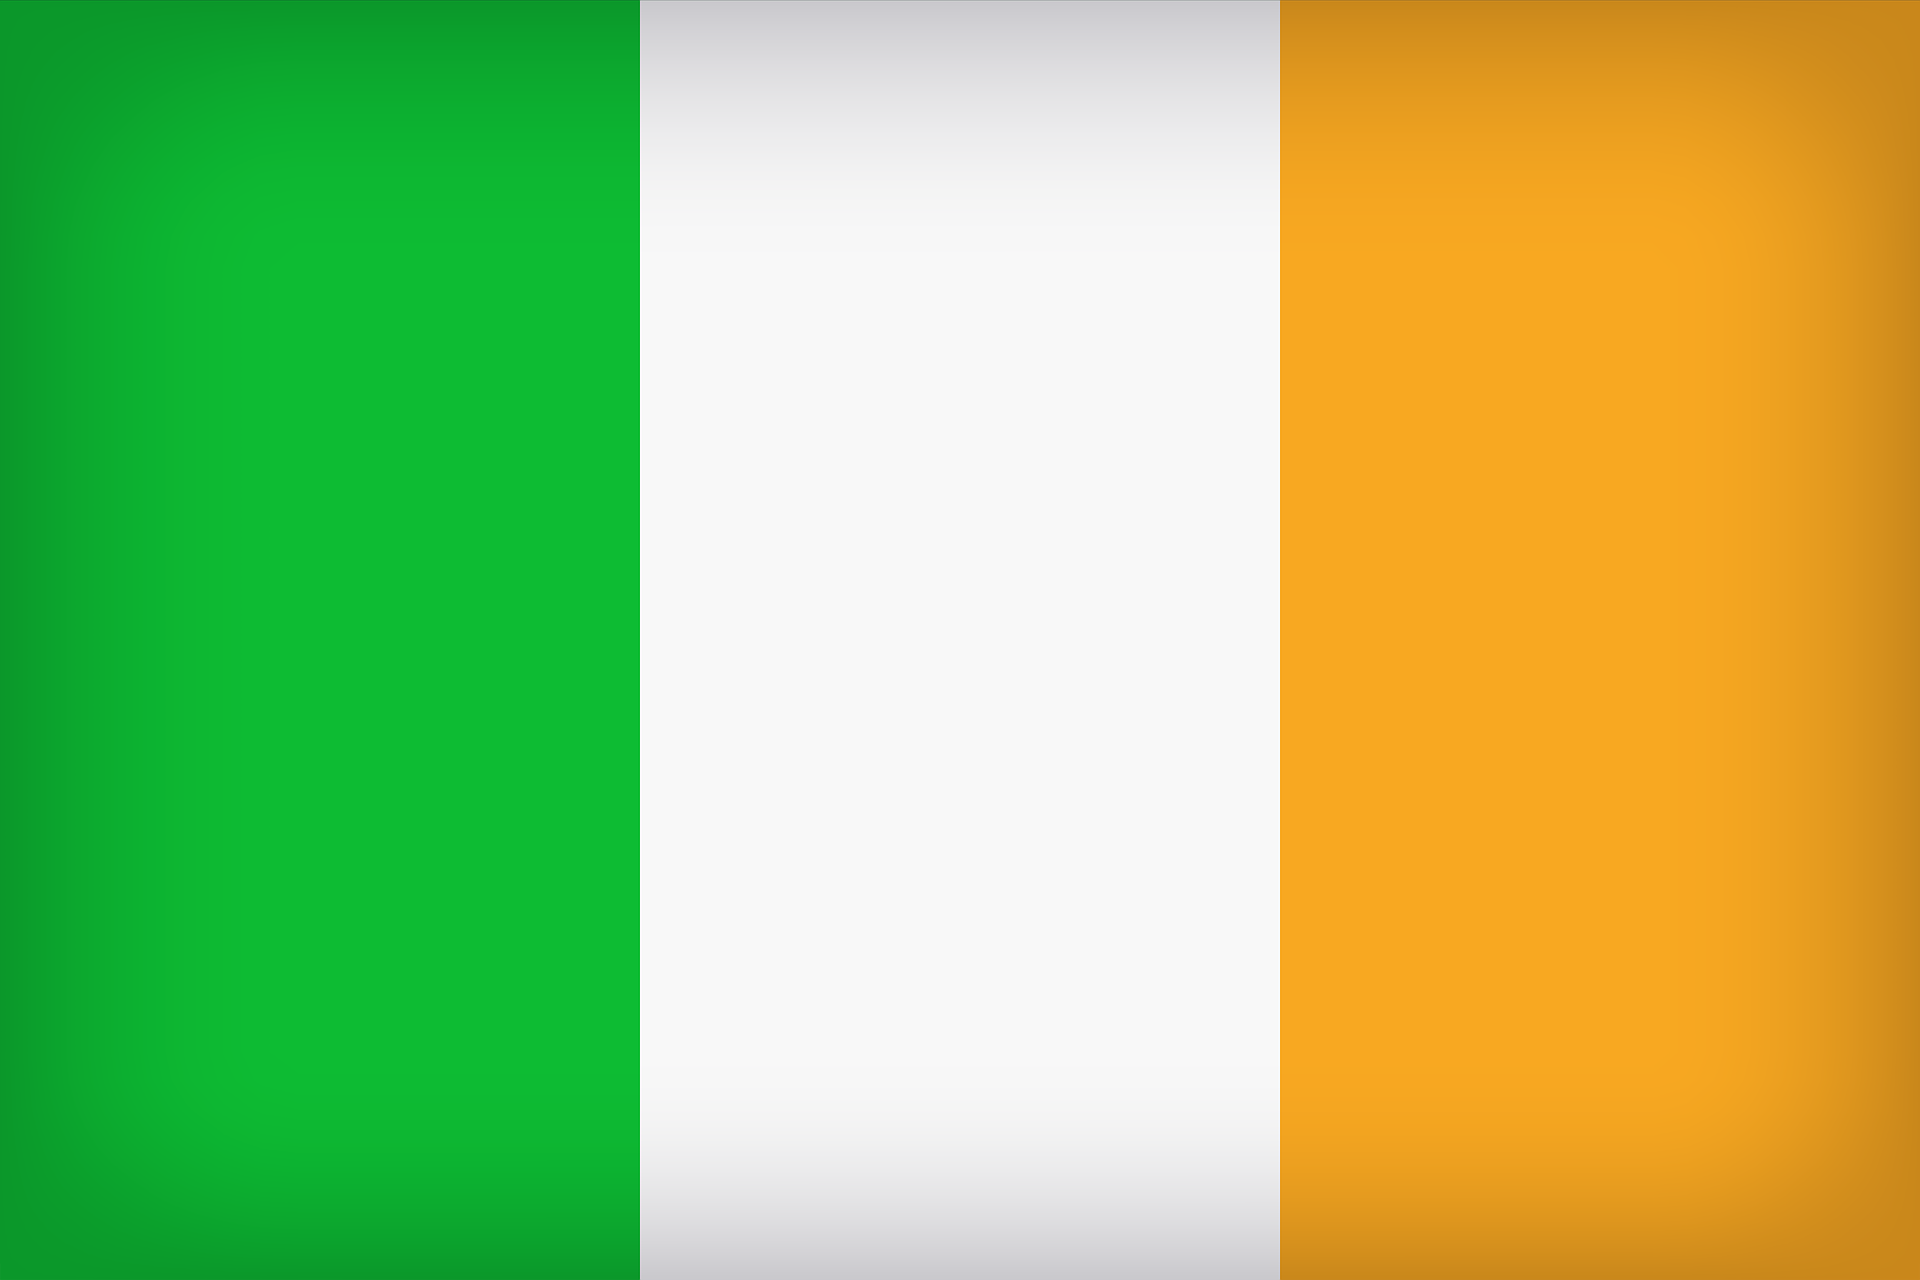 large-image-of-the-flag-of-ireland